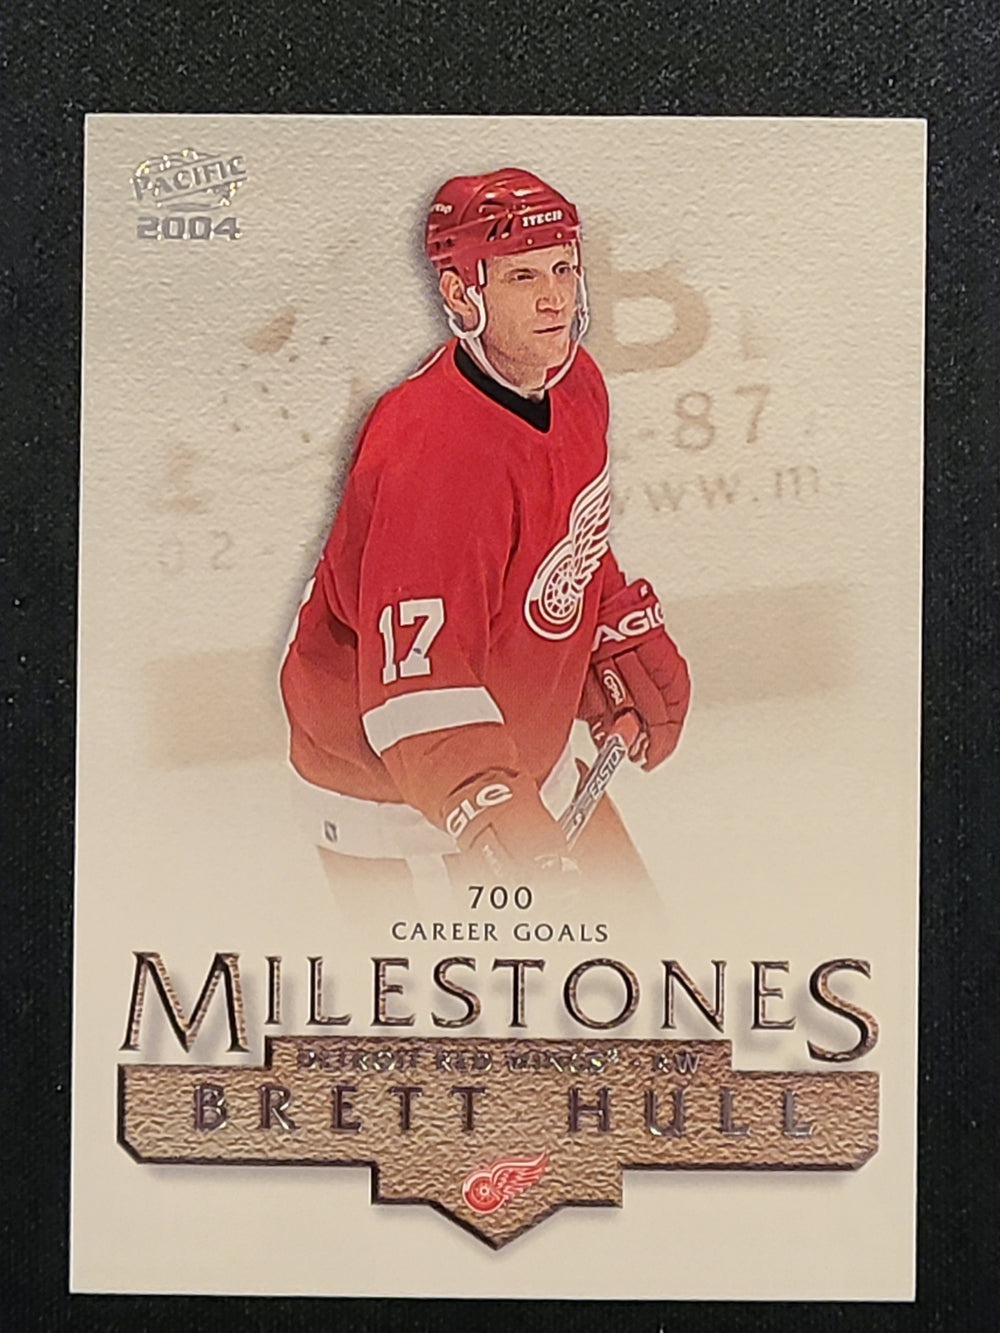 2003-04 Pacific Hockey Milestones #5 Brett Hull Detroit Red Wings (700 Goals)